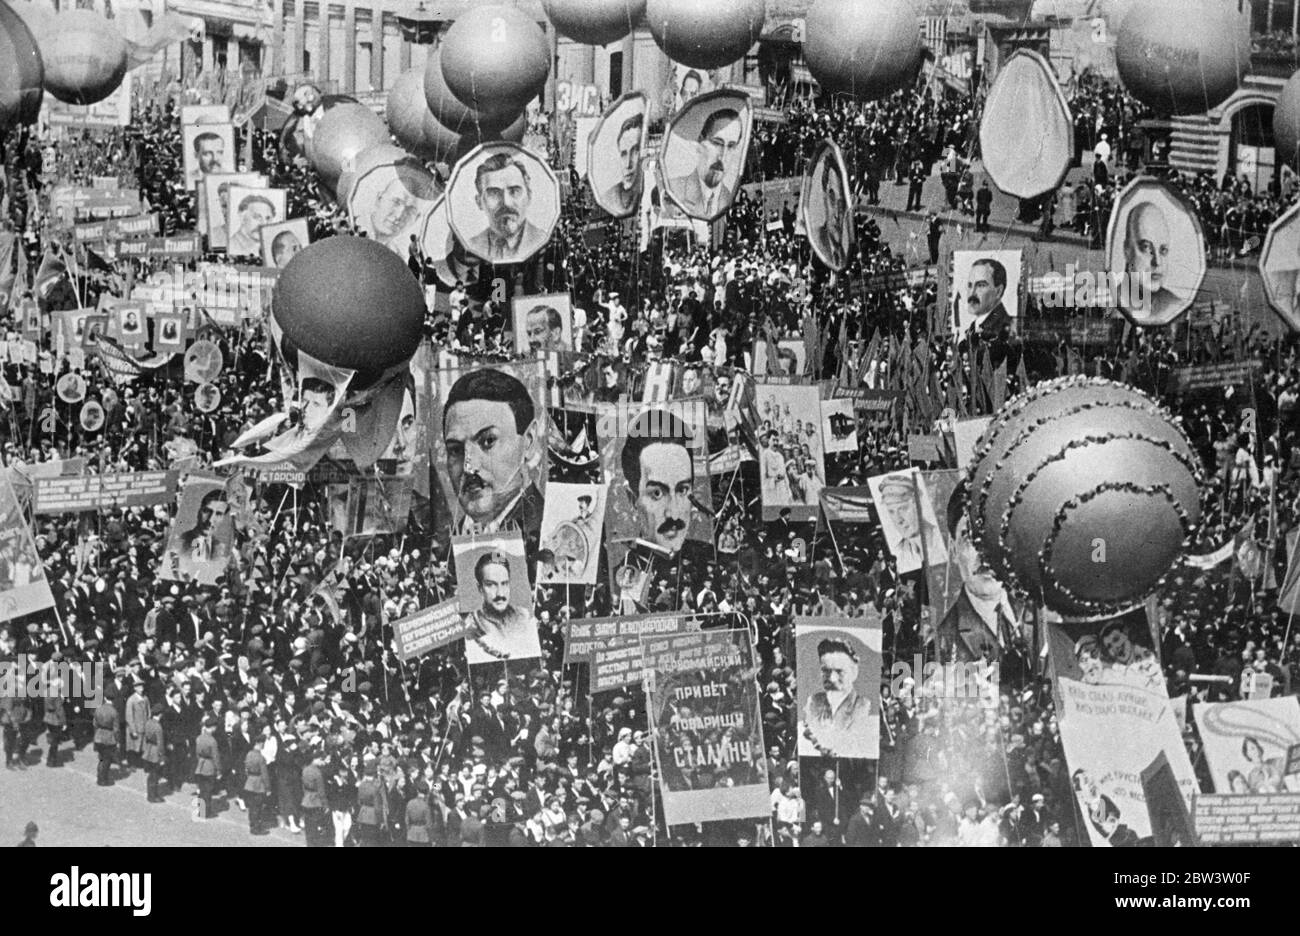 Prime foto del giorno di maggio a Mosca . Milioni di civiliani sfilano in Piazza Rossa . Milioni di civili si sono Uniti in una sfilata di massa attraverso la Piazza Rossa quando il giorno di maggio è stato celebrato a Mosca . La parata civile seguì la parata militare in cui decine di migliaia di truppe con l'ultimo macchinario di guerra marciarono oltre la Tomba di Lenin in in onore di Stalin . Lord Marley era tra gli illustri stranieri che hanno guardato le celebrazioni , che quest' anno aveva una nota ancora più chiara di quanto non lo fosse di solito in risposta all' ordine di Stalin che' la vita è ora gayer e migliore' . Foto appena ricevuta mostra , pa Foto Stock